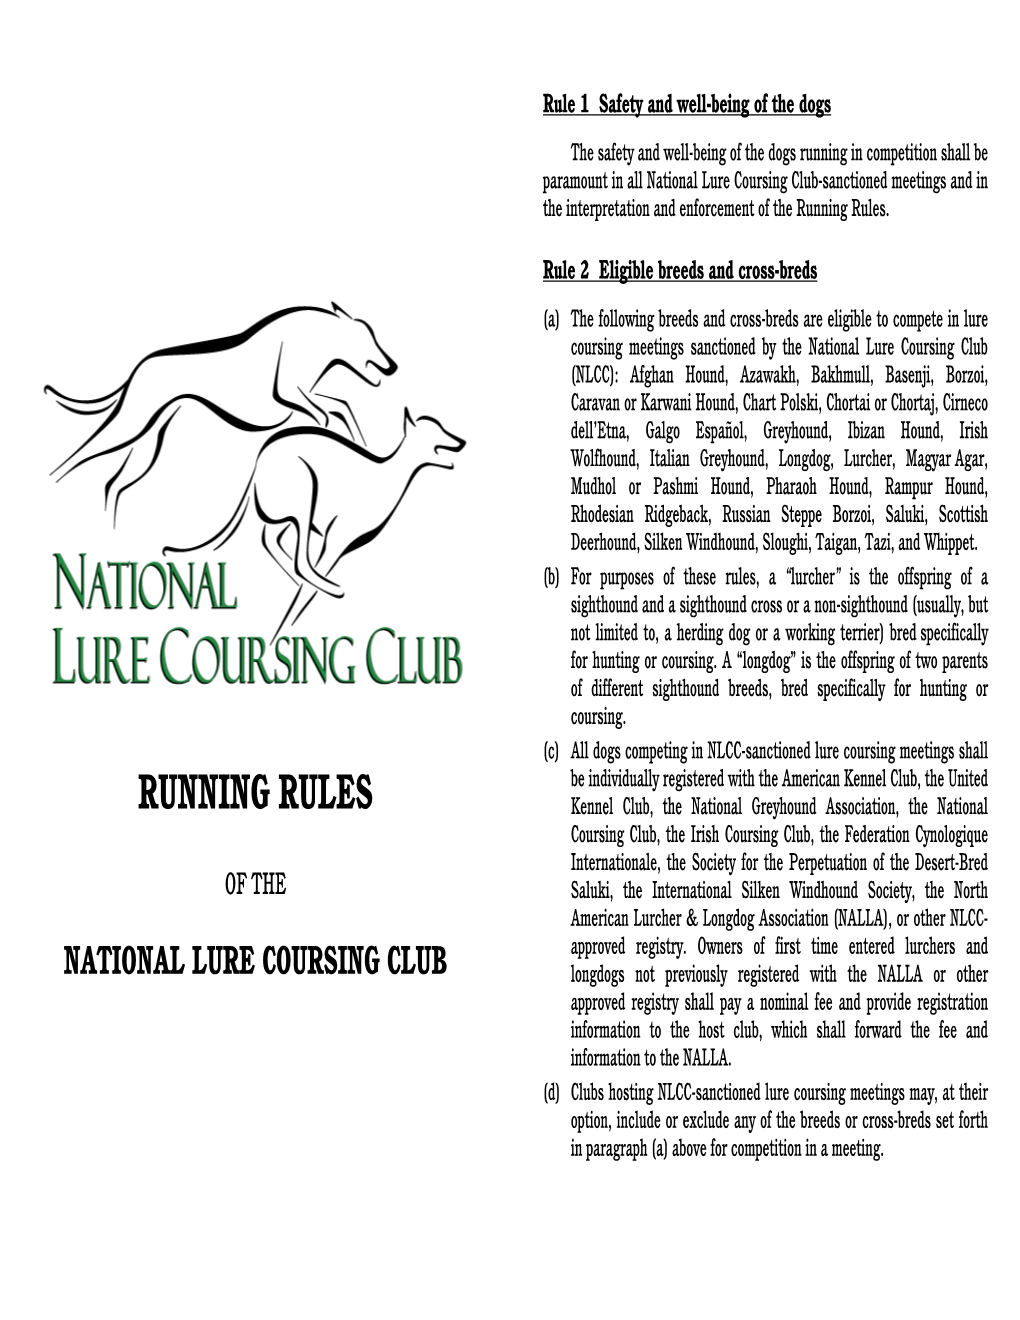 NLCC Running Rules